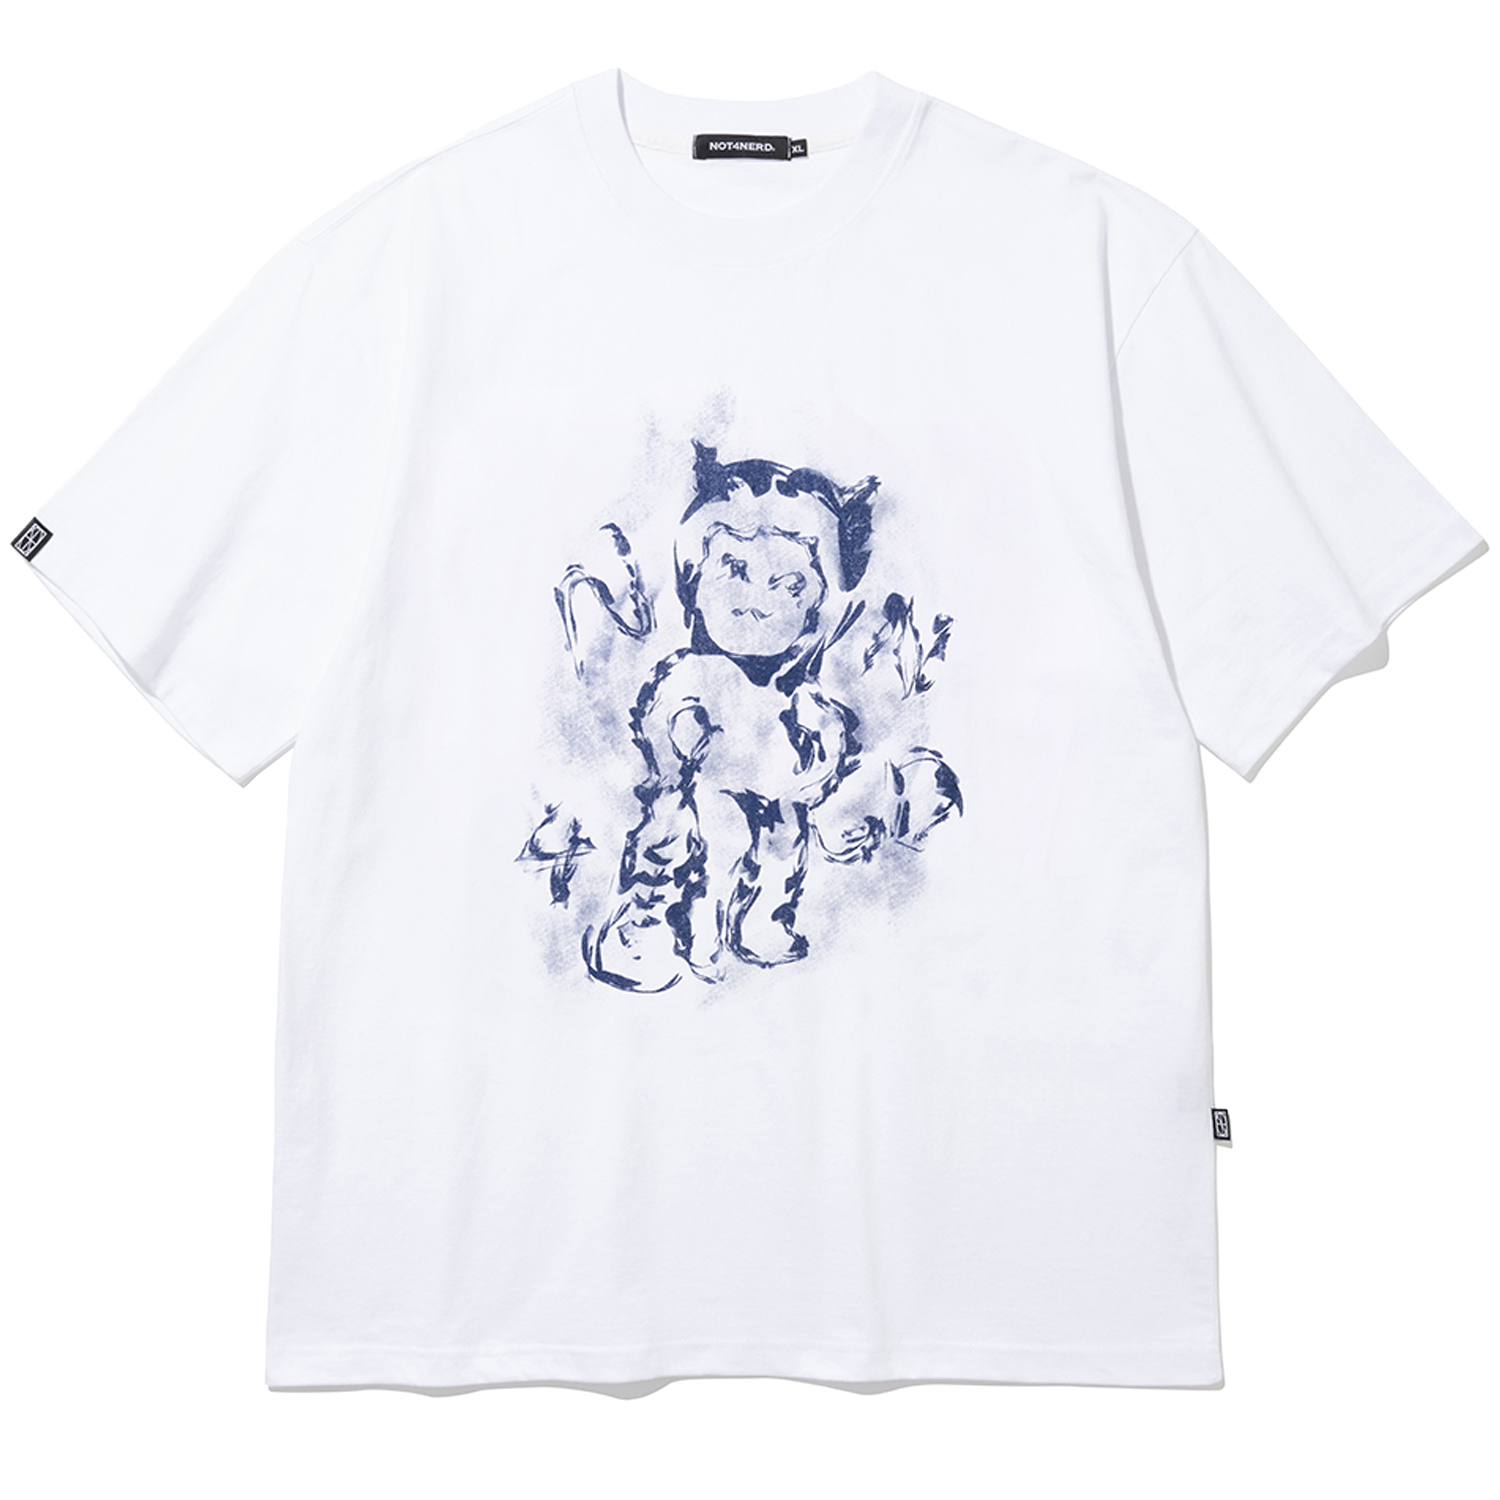 Baby Dokkaebi T-Shirts - White,NOT4NERD